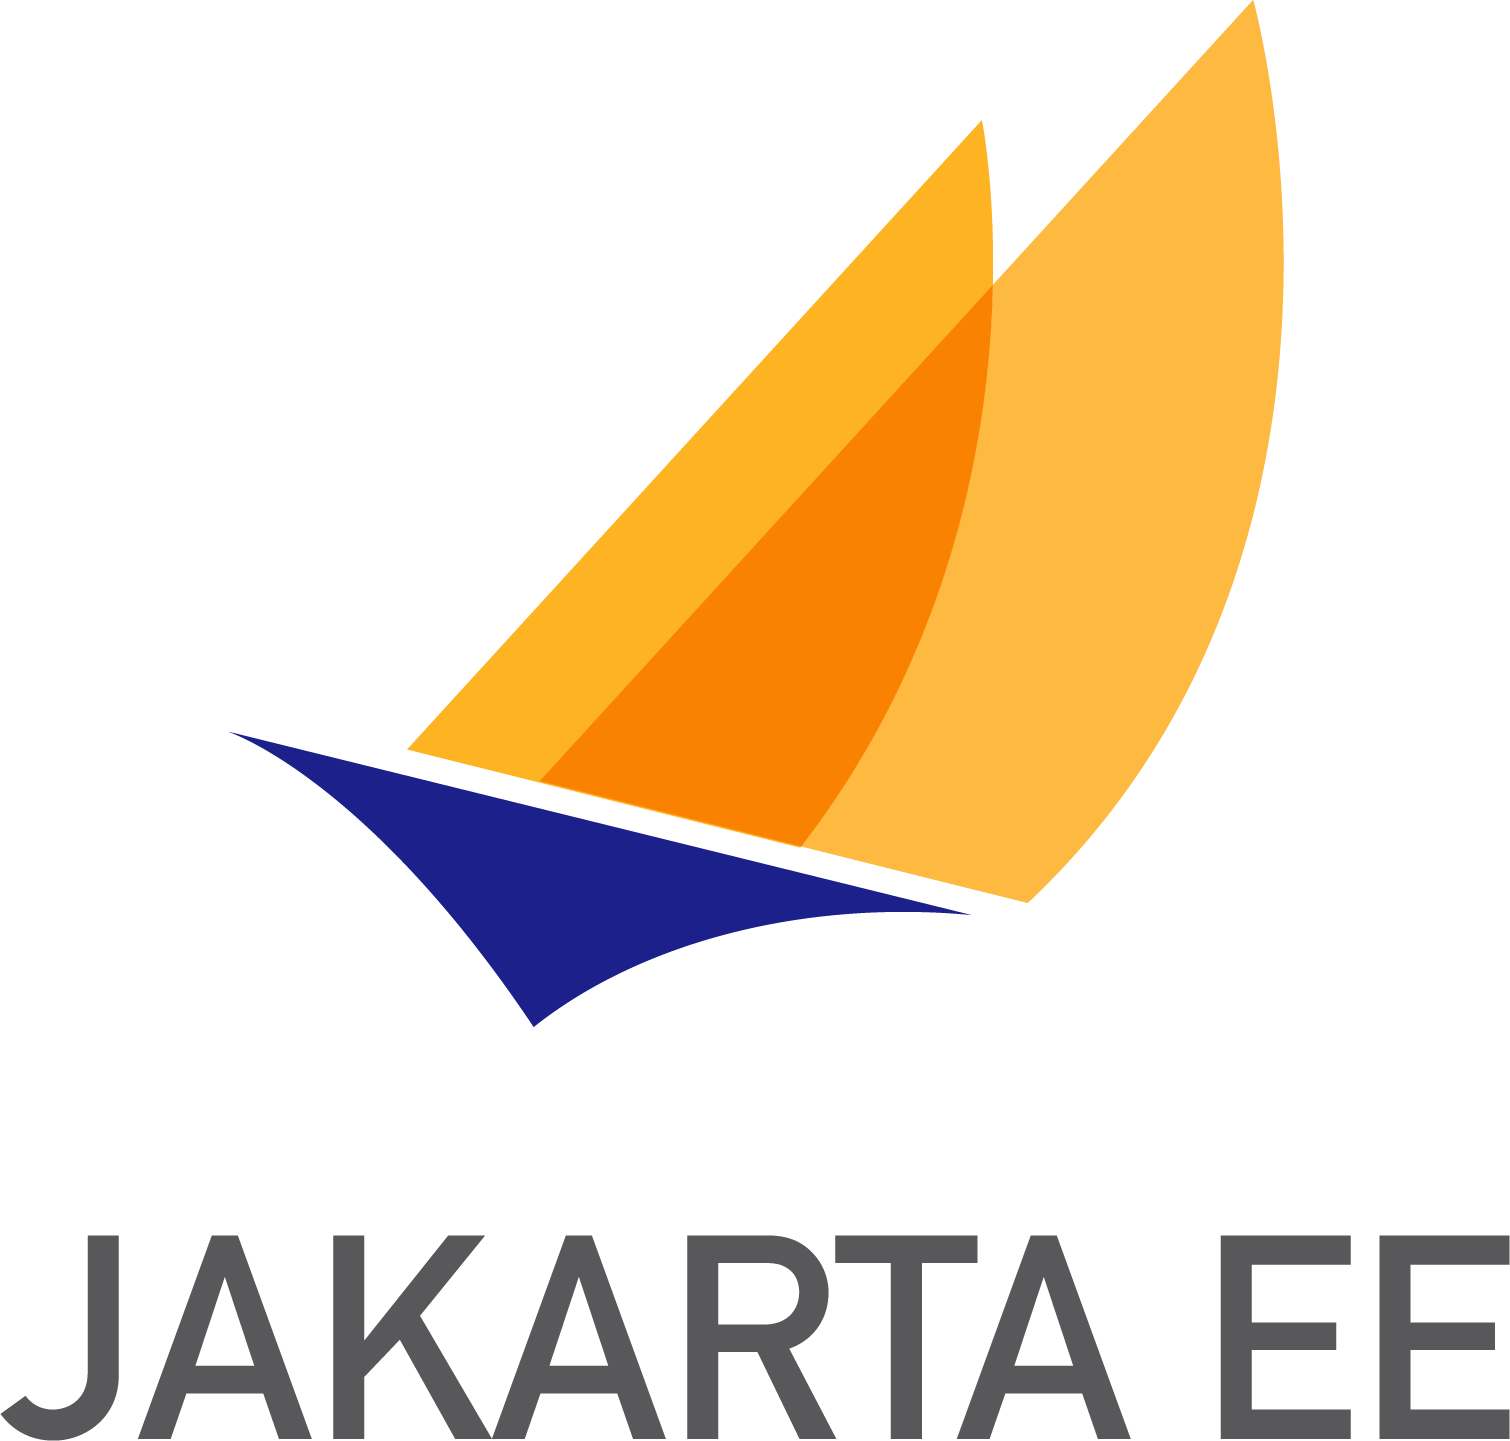 Jakarta NoSQL logo